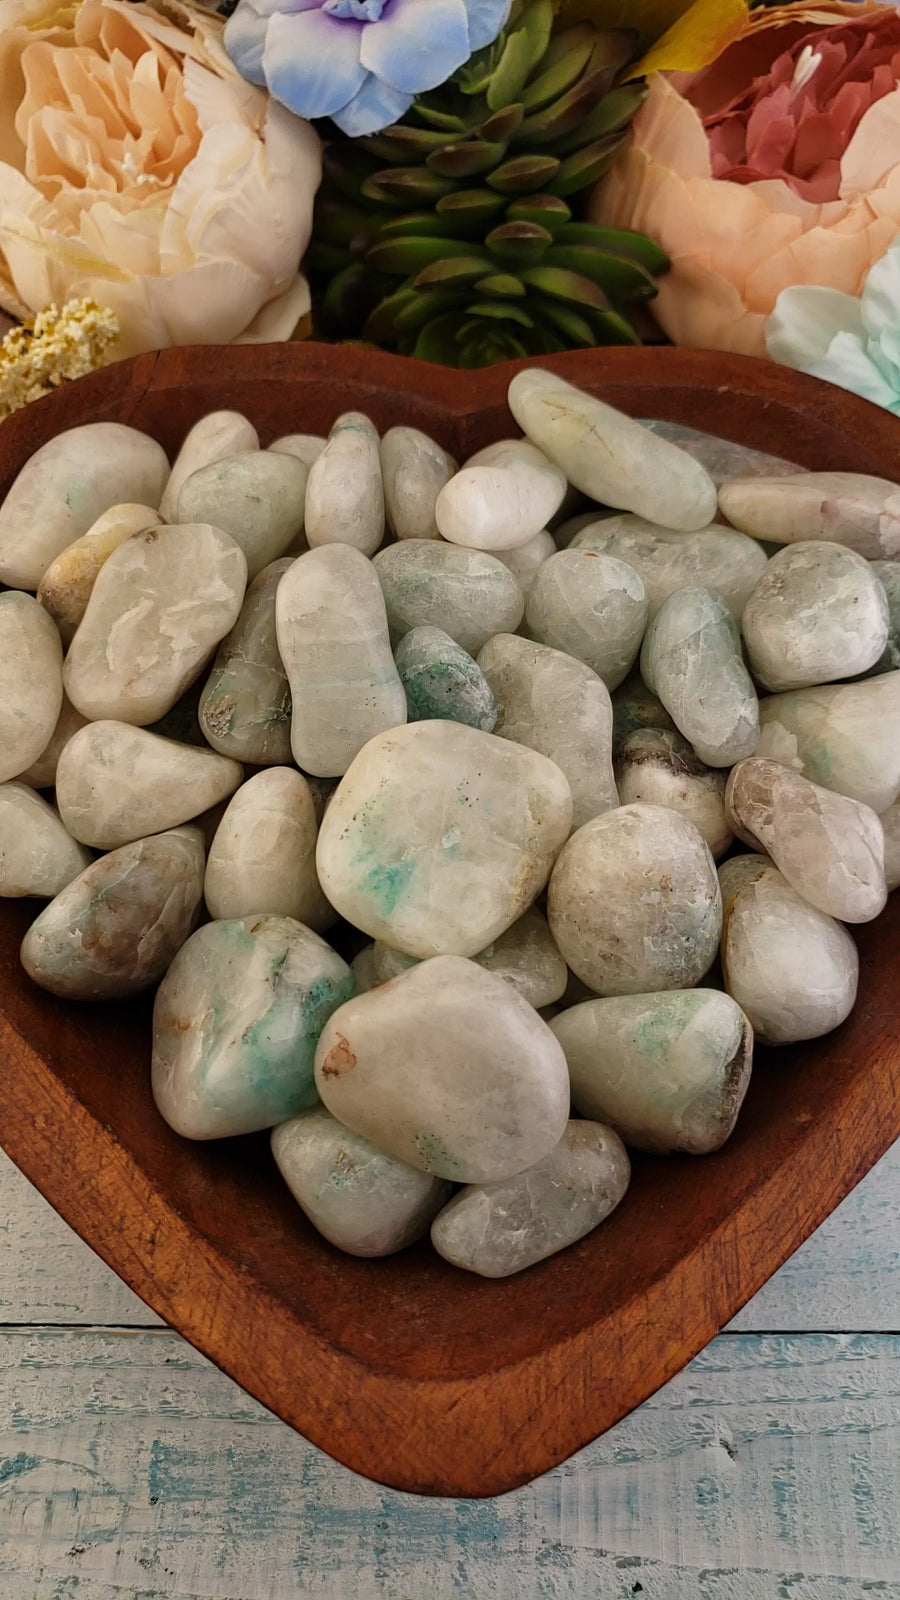 Quartz with Chrysocolla Tumble Stone - Single Stone